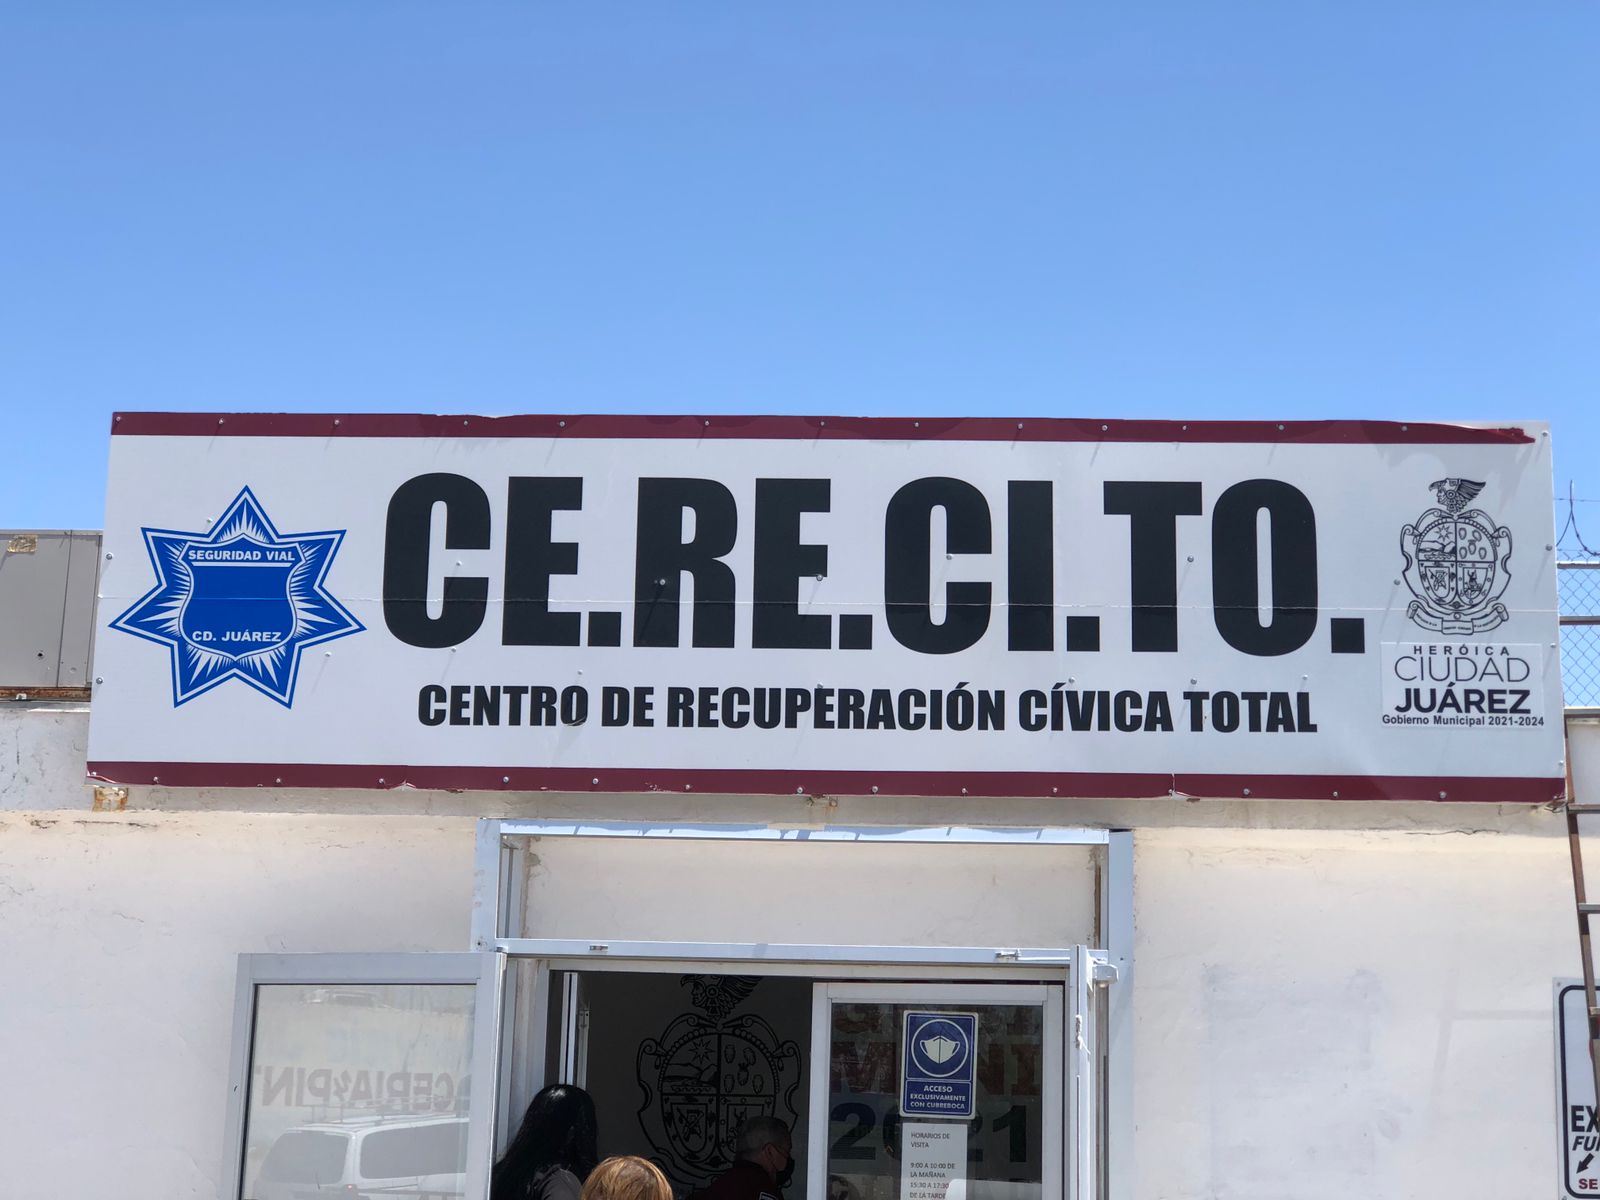 Por conducir en estado de ebriedad van 98 al CERECITO de Ciudad Juárez